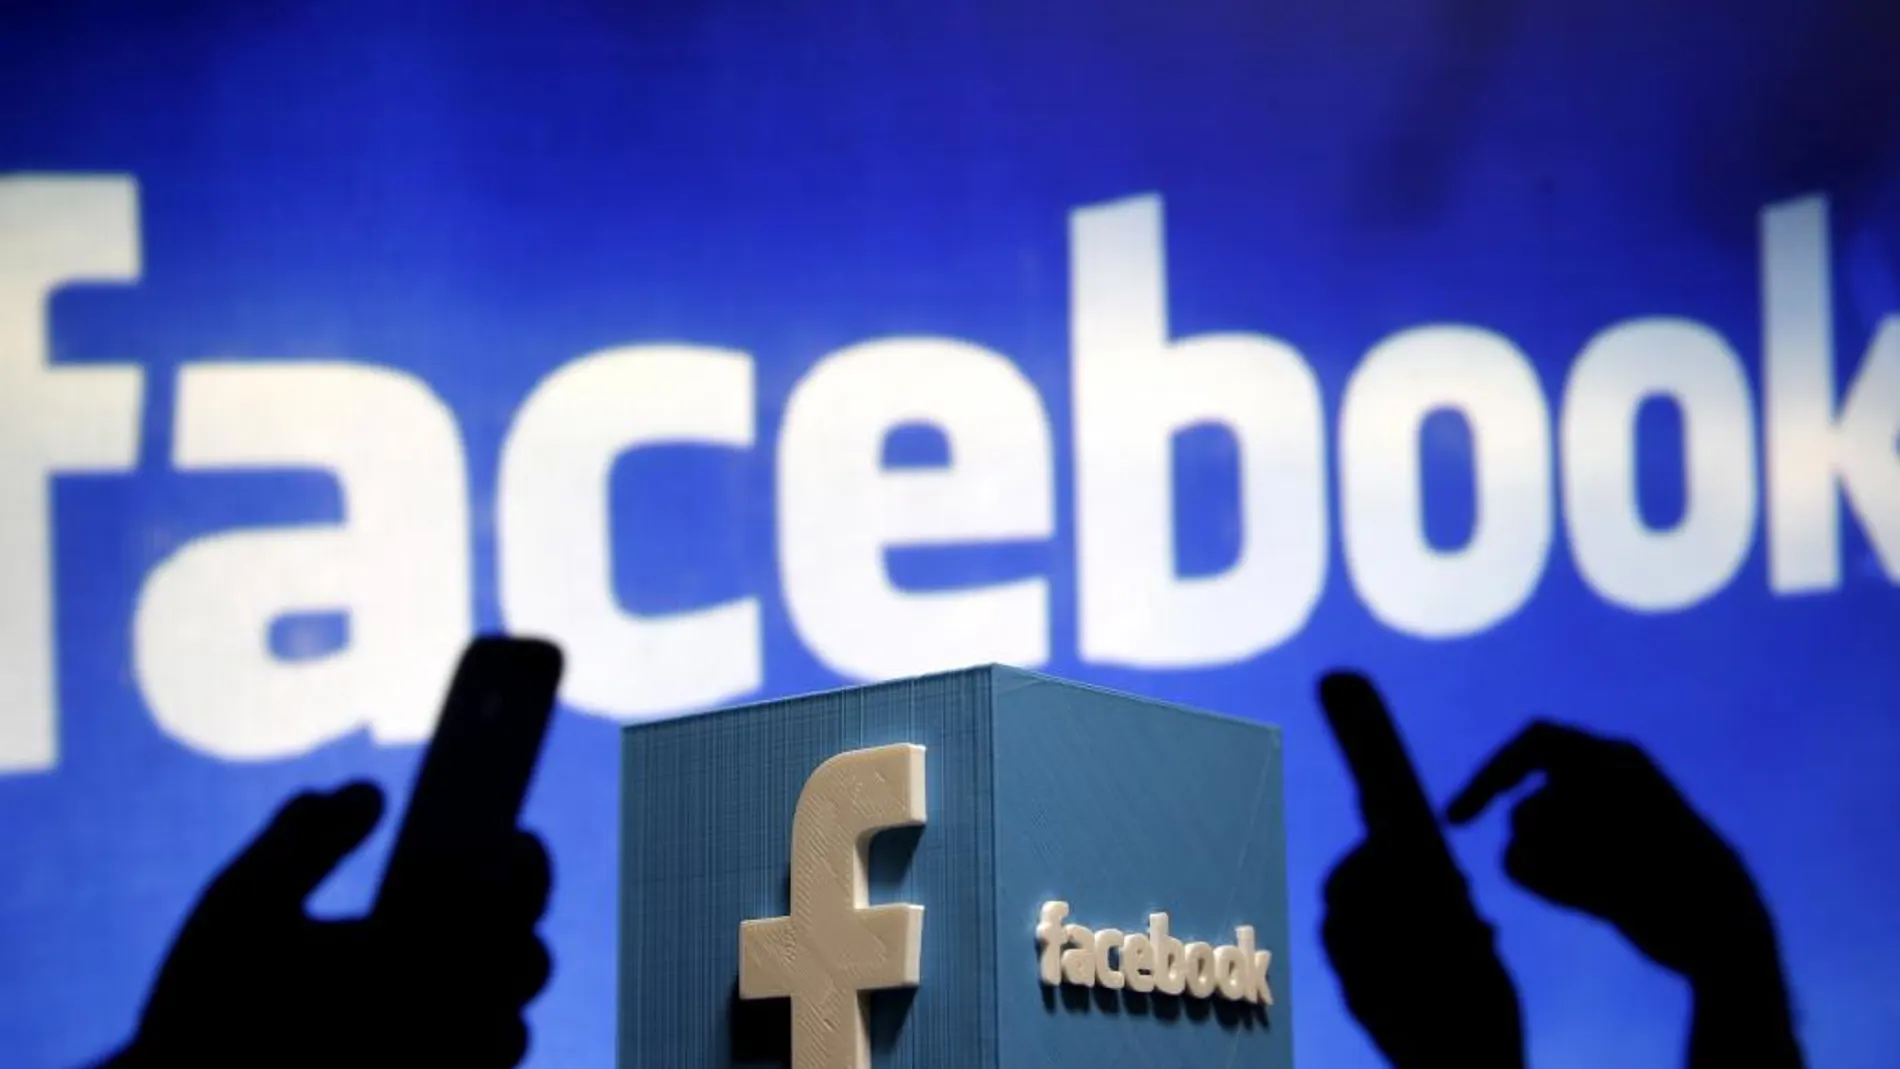 La Agencia Española de Protección de Datos ha sancionado a Facebook con 1,2 millones de euros por vulnerar la normativa de protección de datos